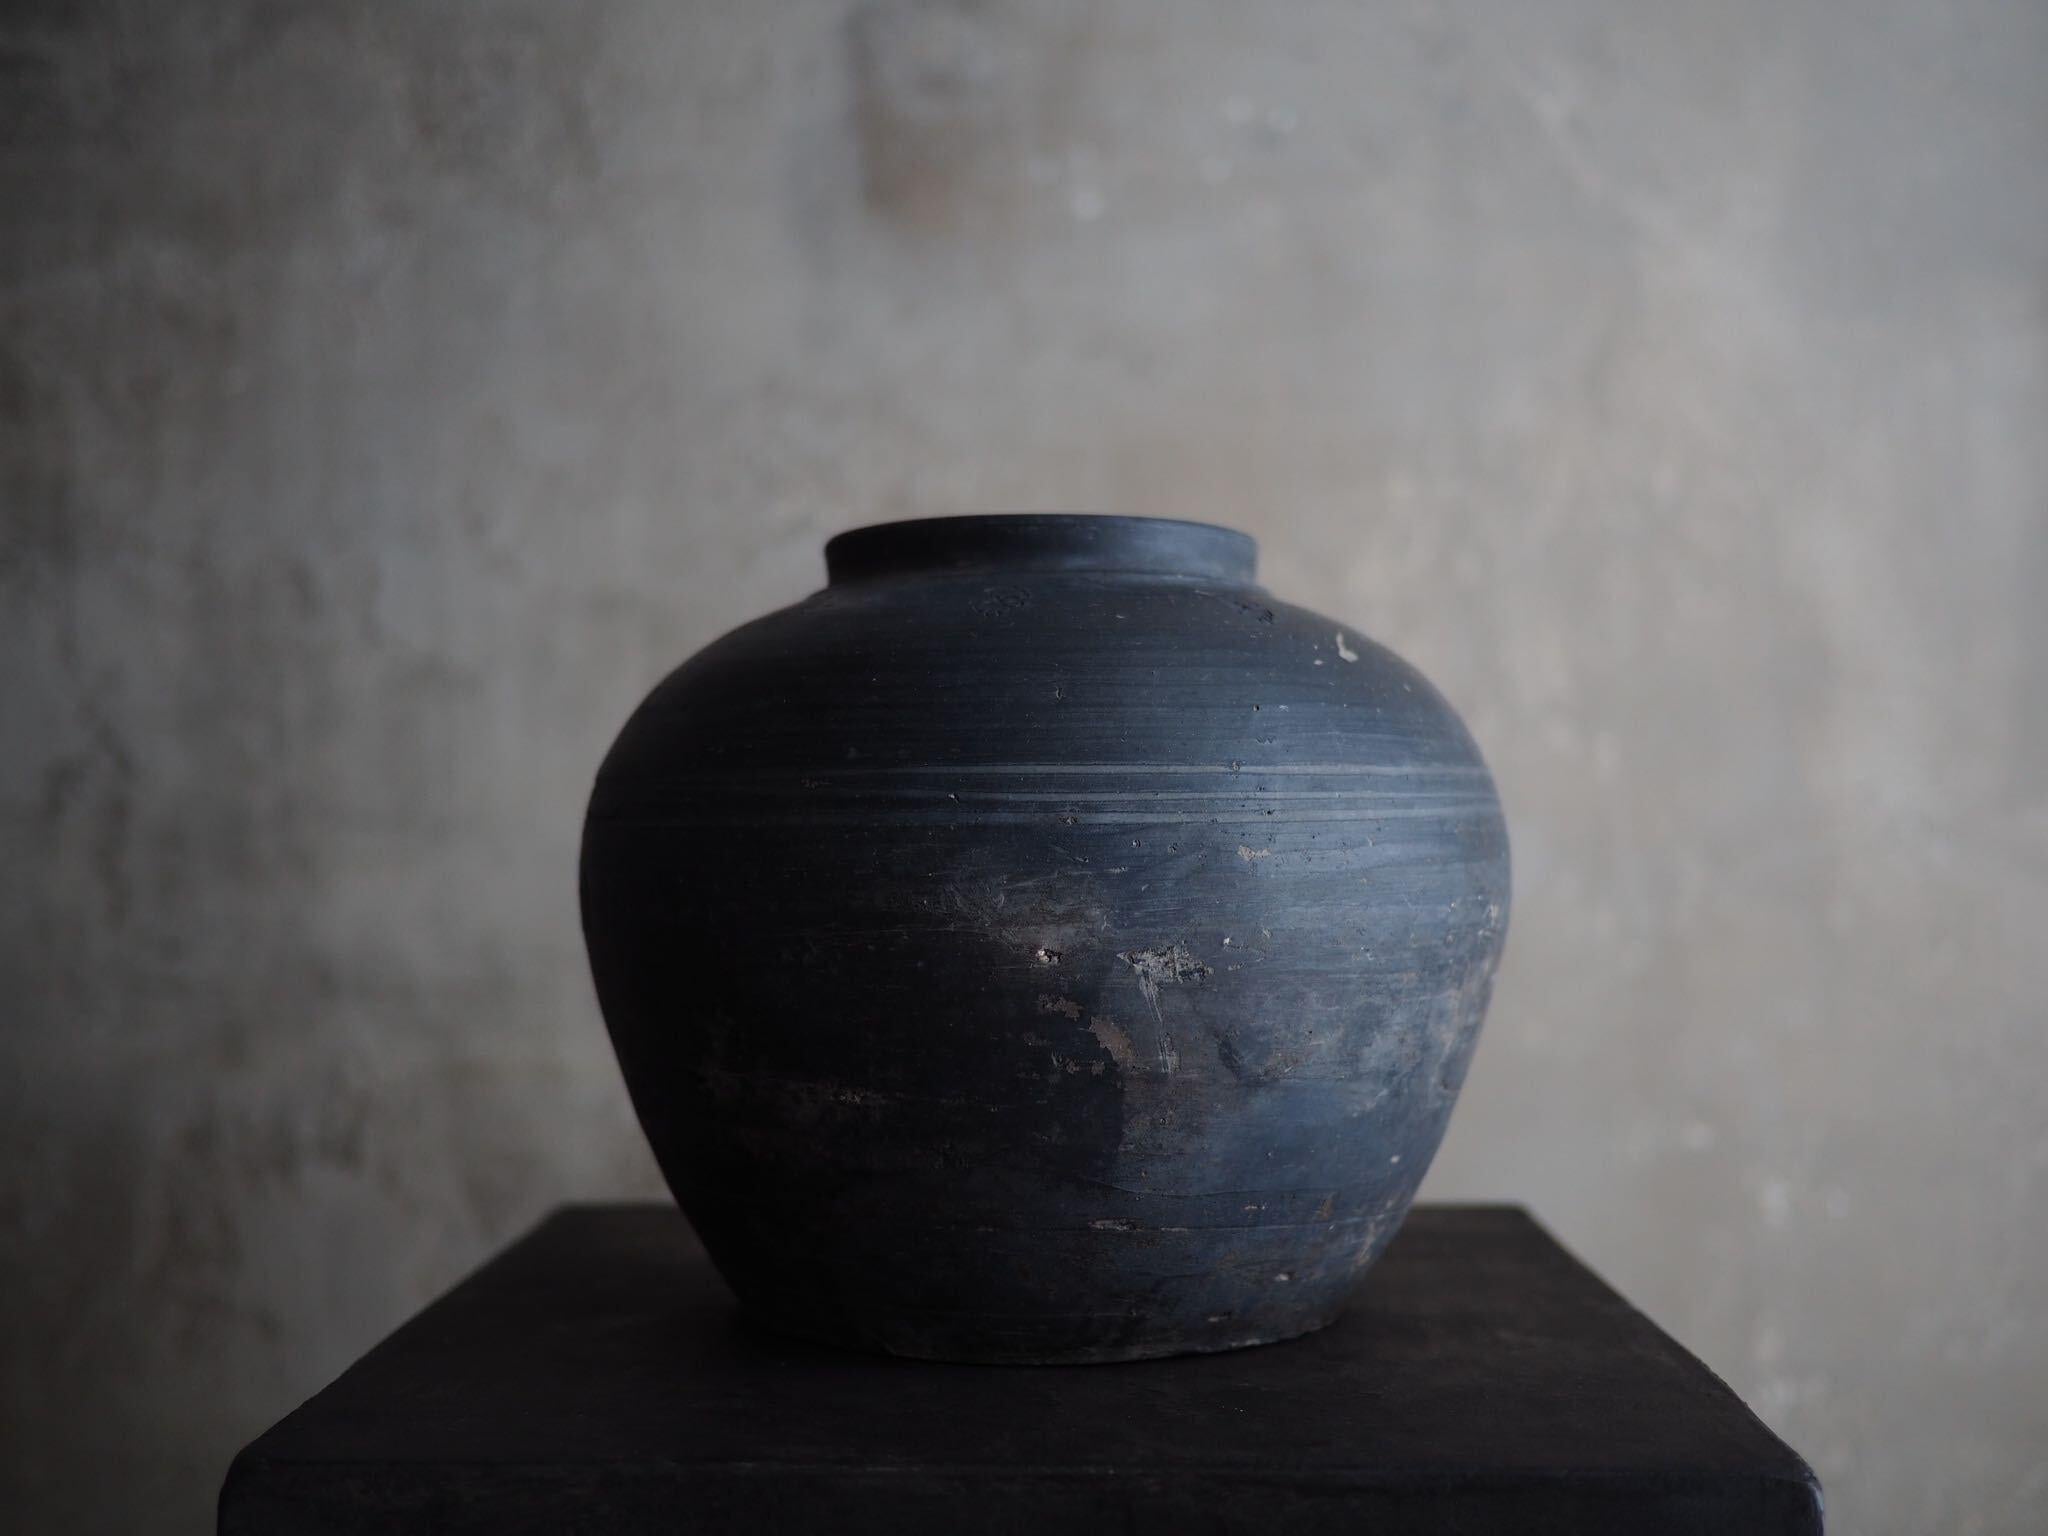 18th century black clay wabi sabi pot, with beautiful patina.